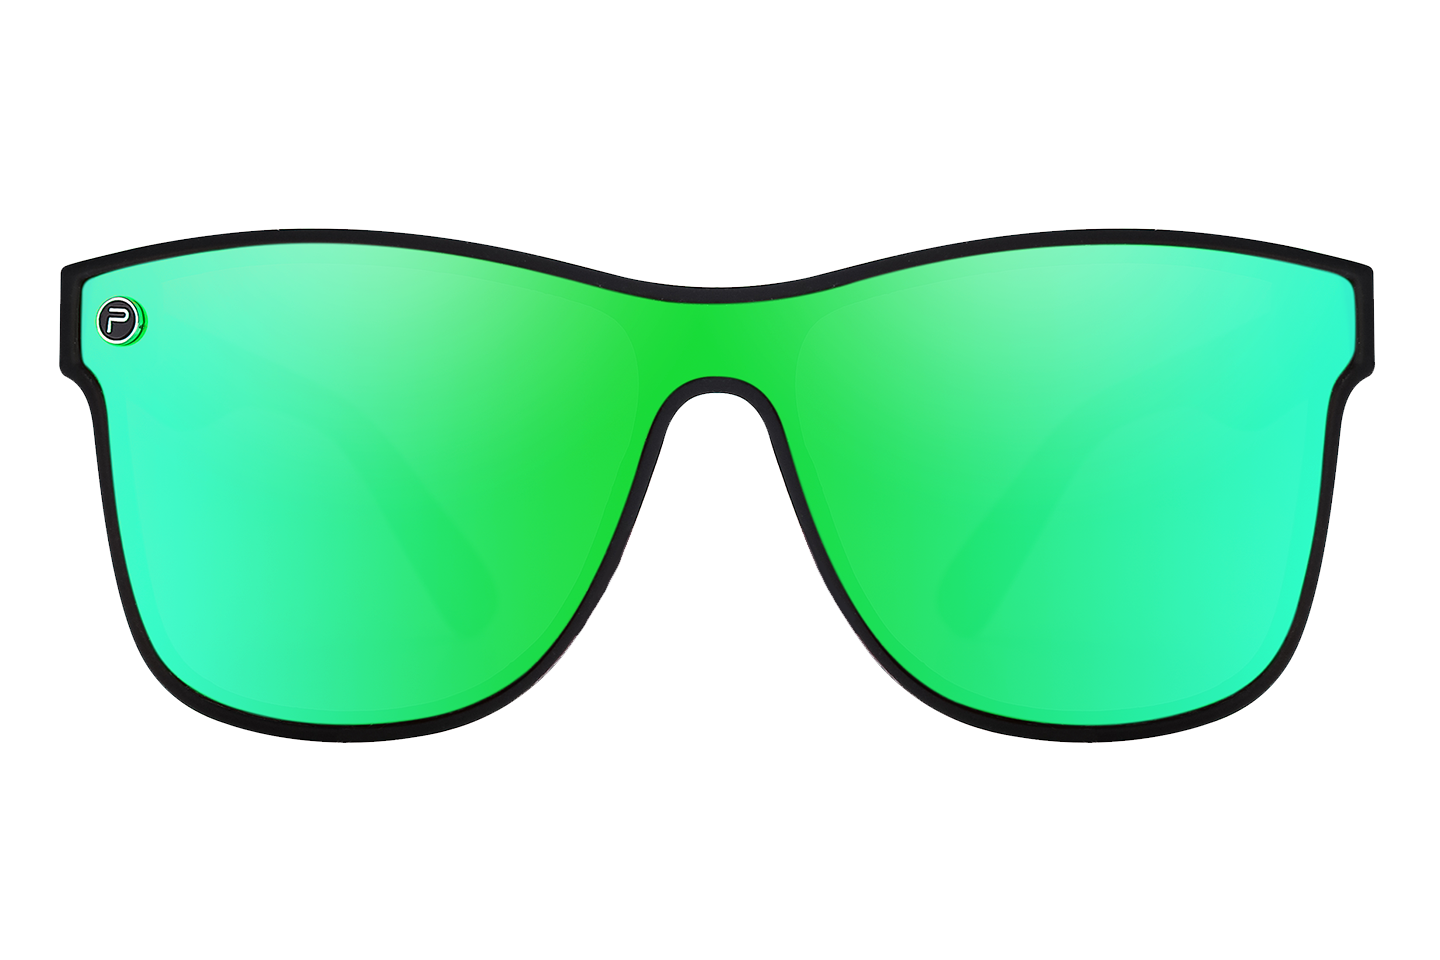 Northern Lights - Solar Shield Sunglasses | SUNHAUK – Sunhauk Eyewear